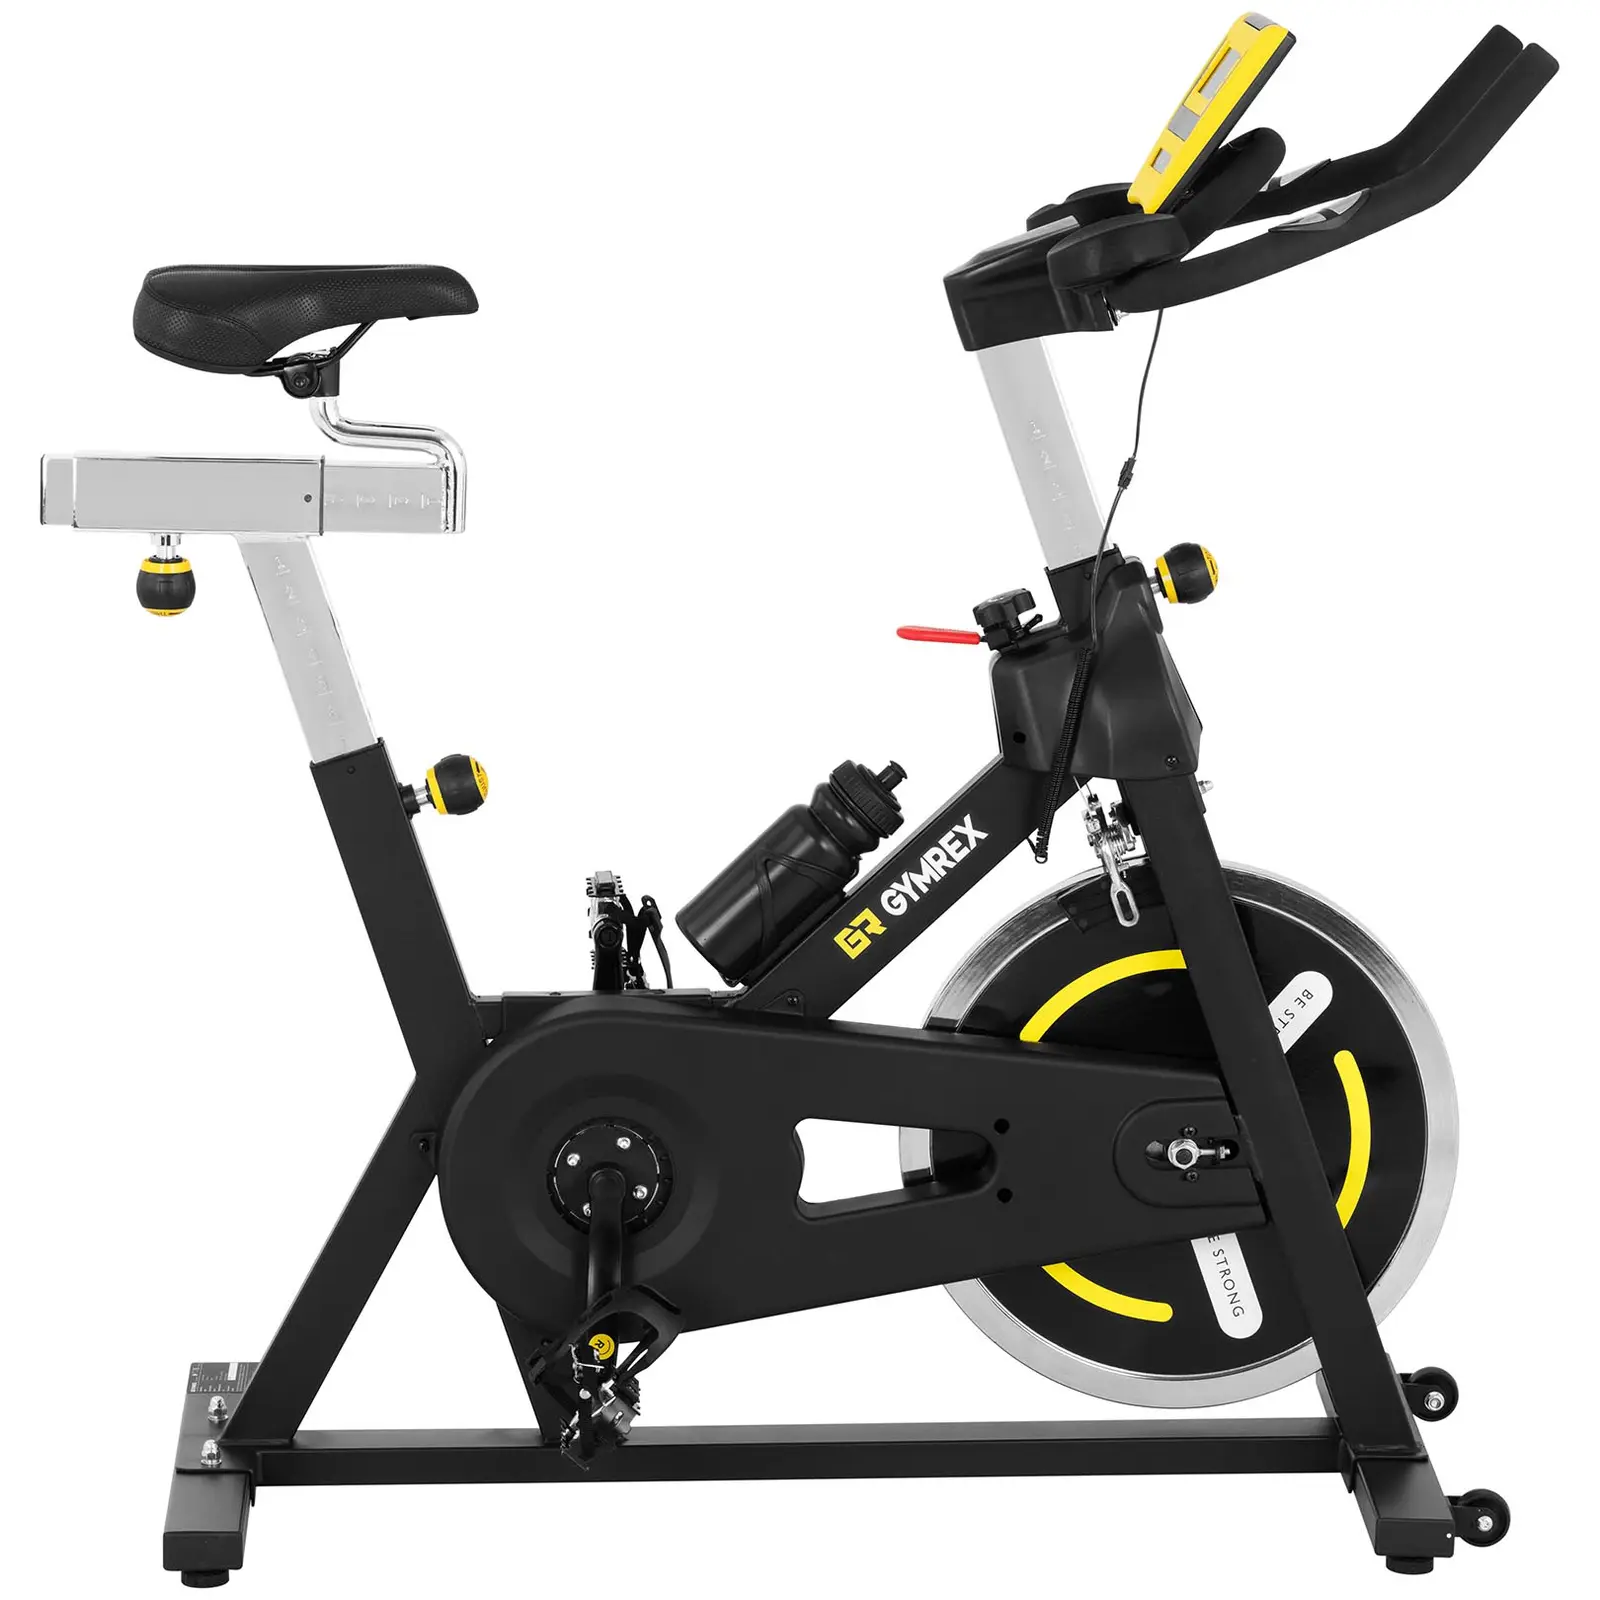 Motionscykel - pedalbelastning 18 kg - LCD